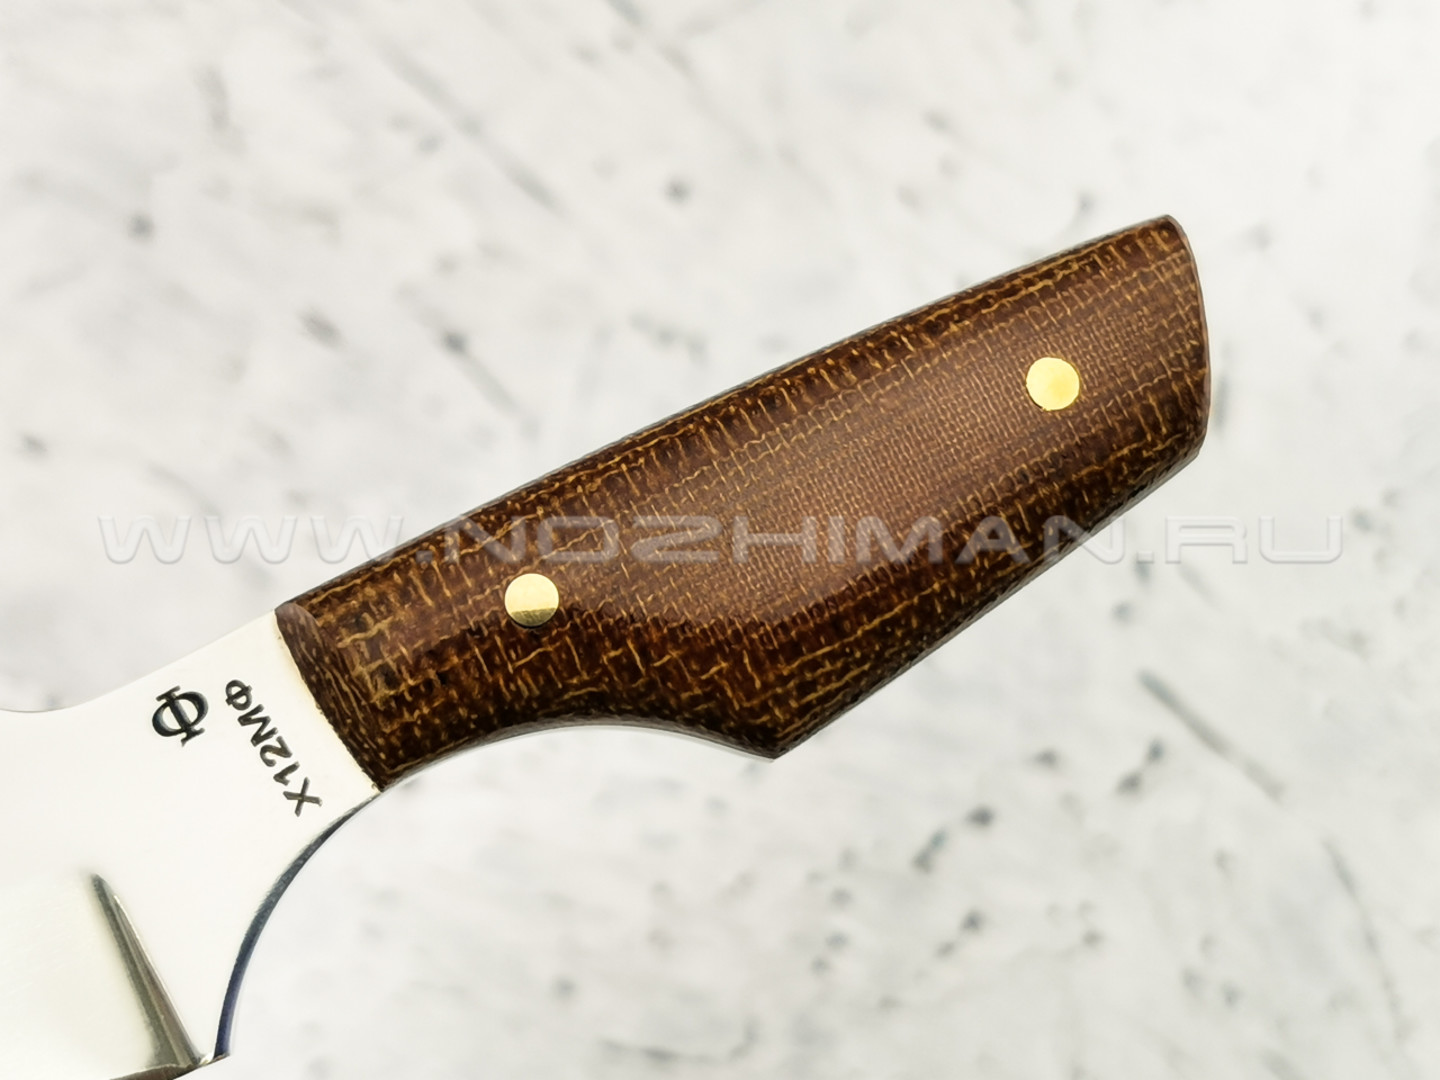 Нож "Шейный-3" сталь Х12МФ, рукоять текстолит (Федотов А. В.)